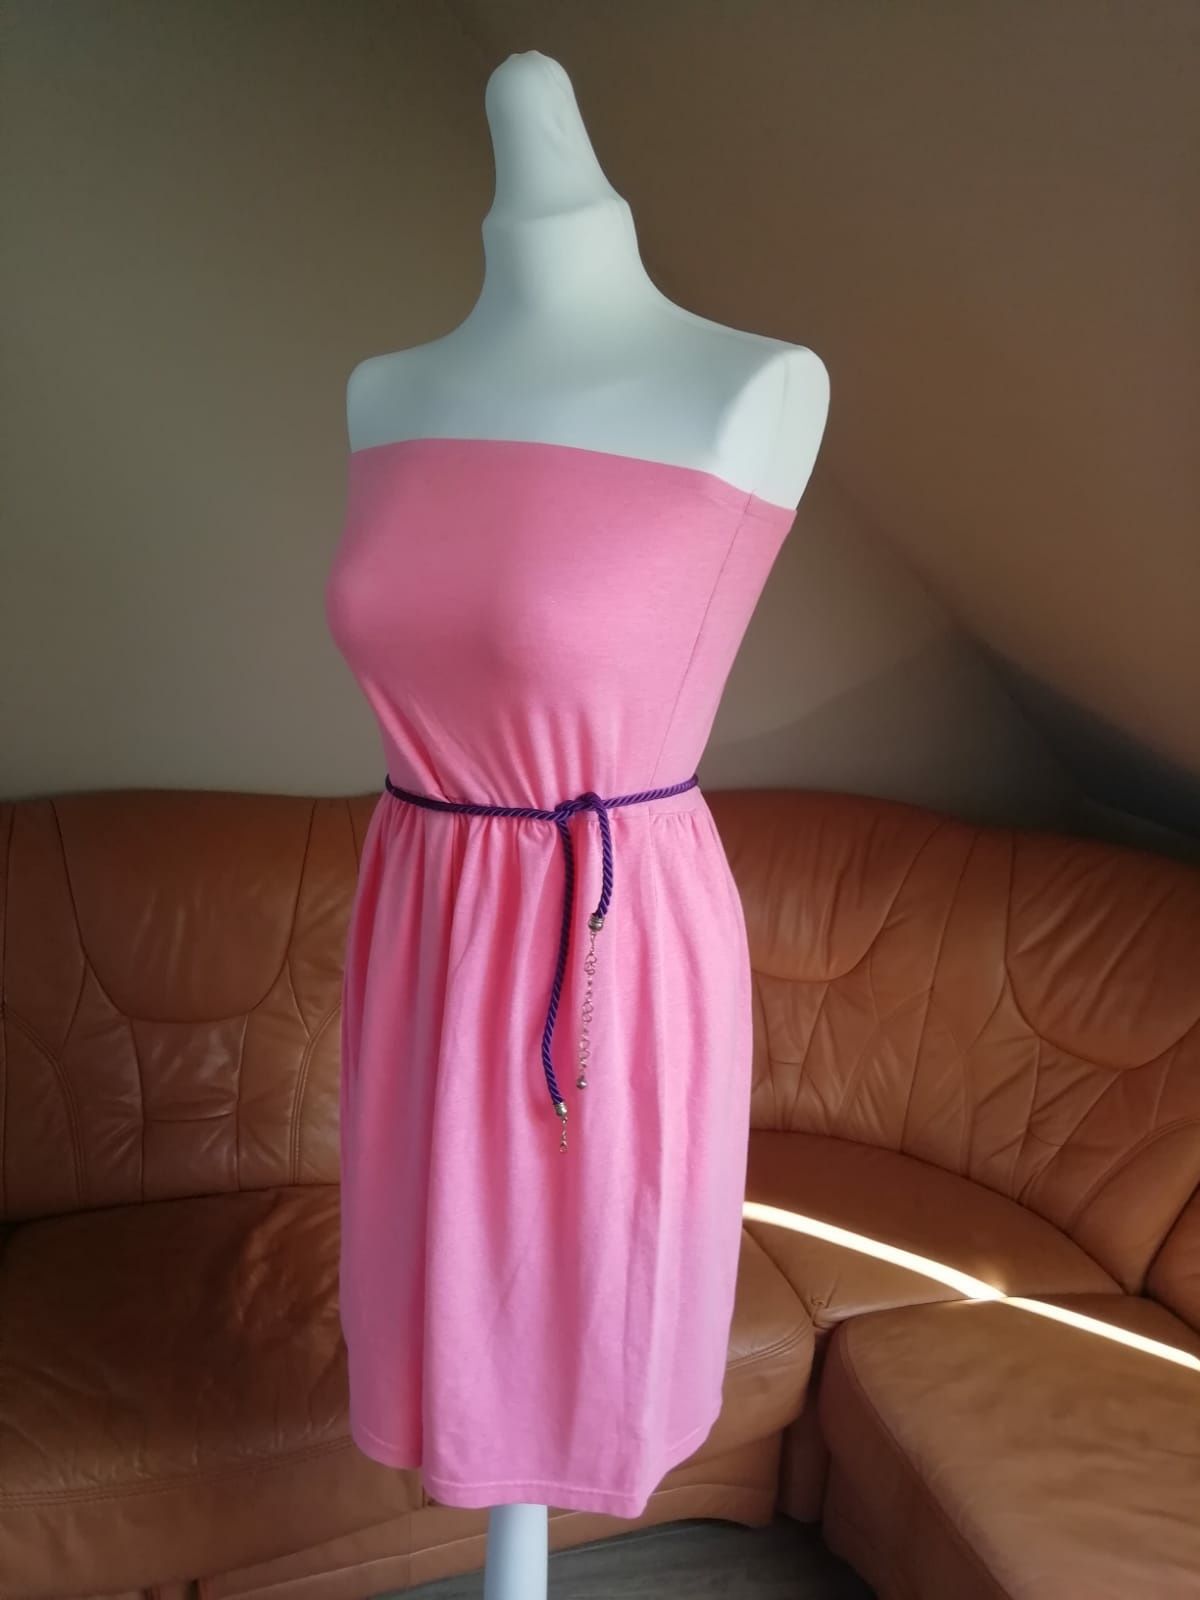 Spódnica midi/sukienka F&F, neonowy róż, barbie core